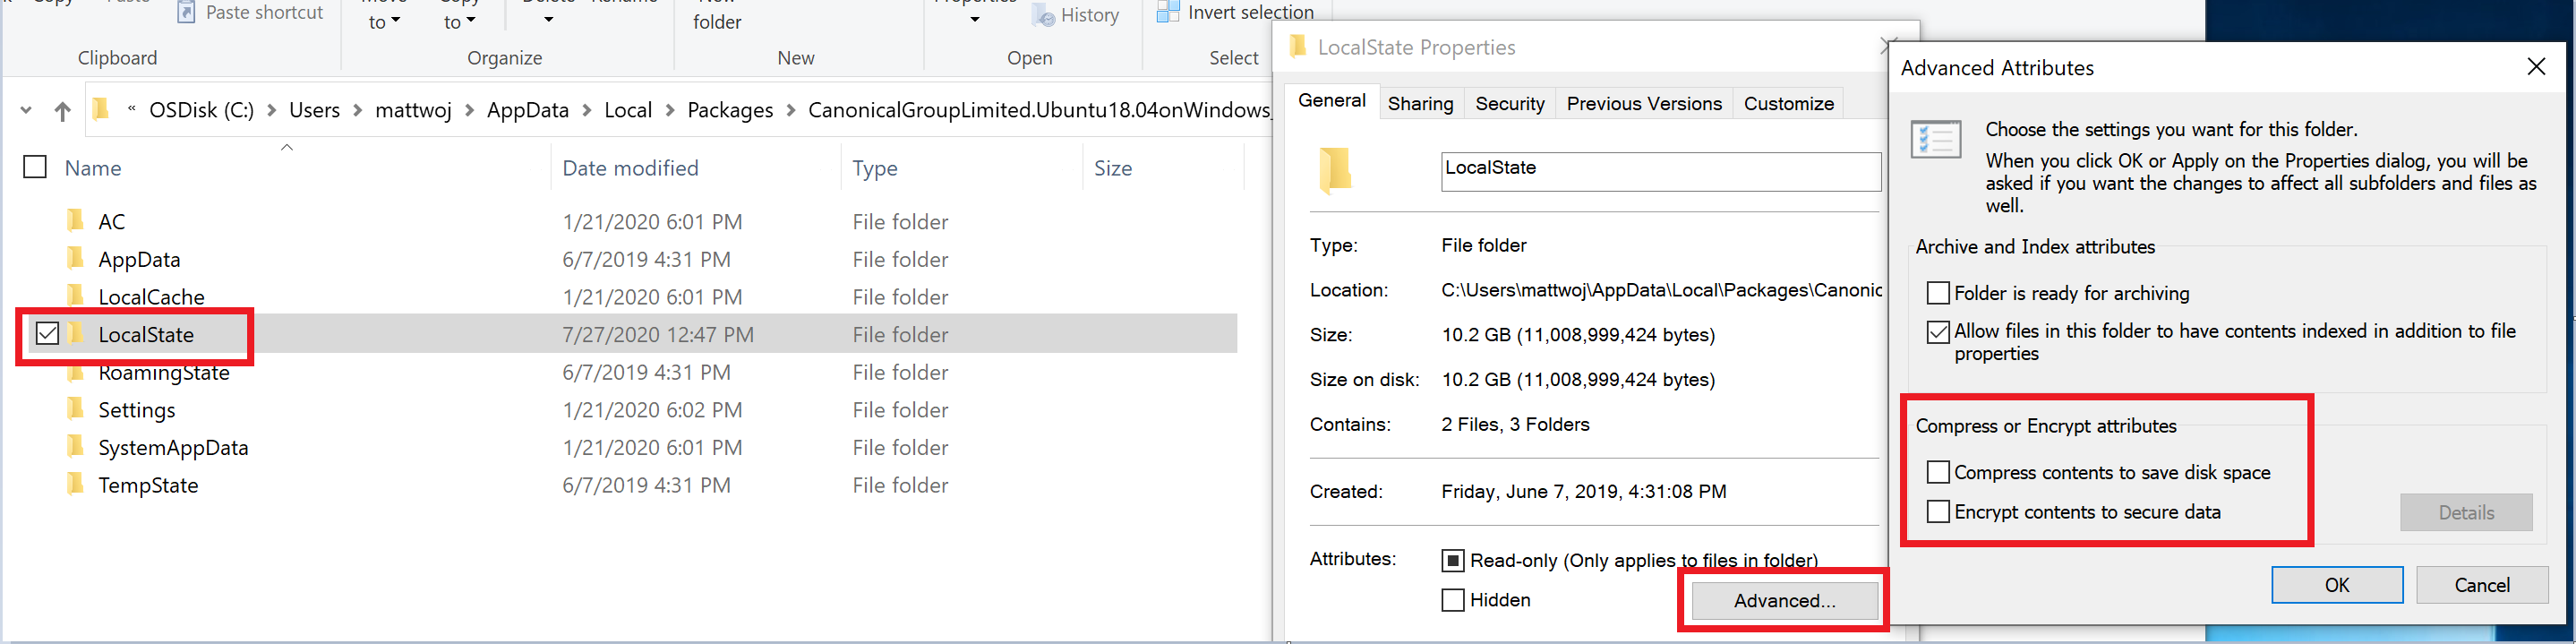 Captura de pantalla de la configuración de la propiedad de distribución de WSL